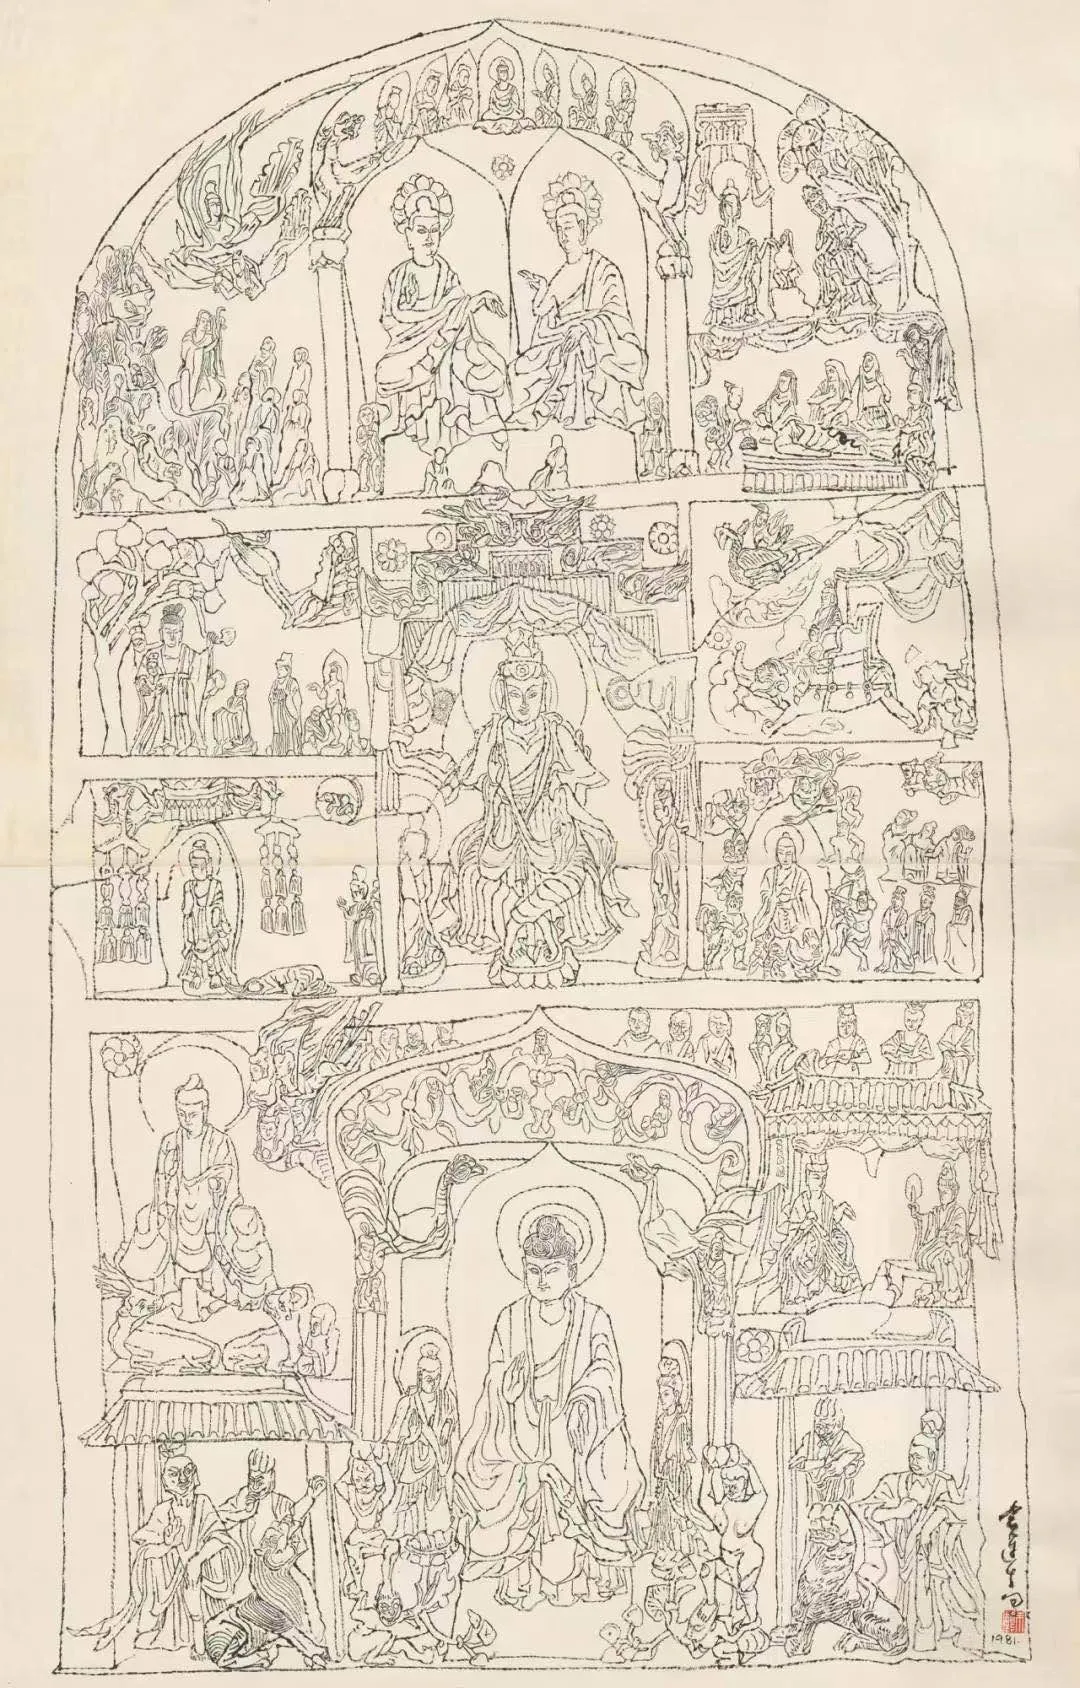 袁运生 “麦积山石窟白描系列” ，134x86cm，宣纸水墨，1981